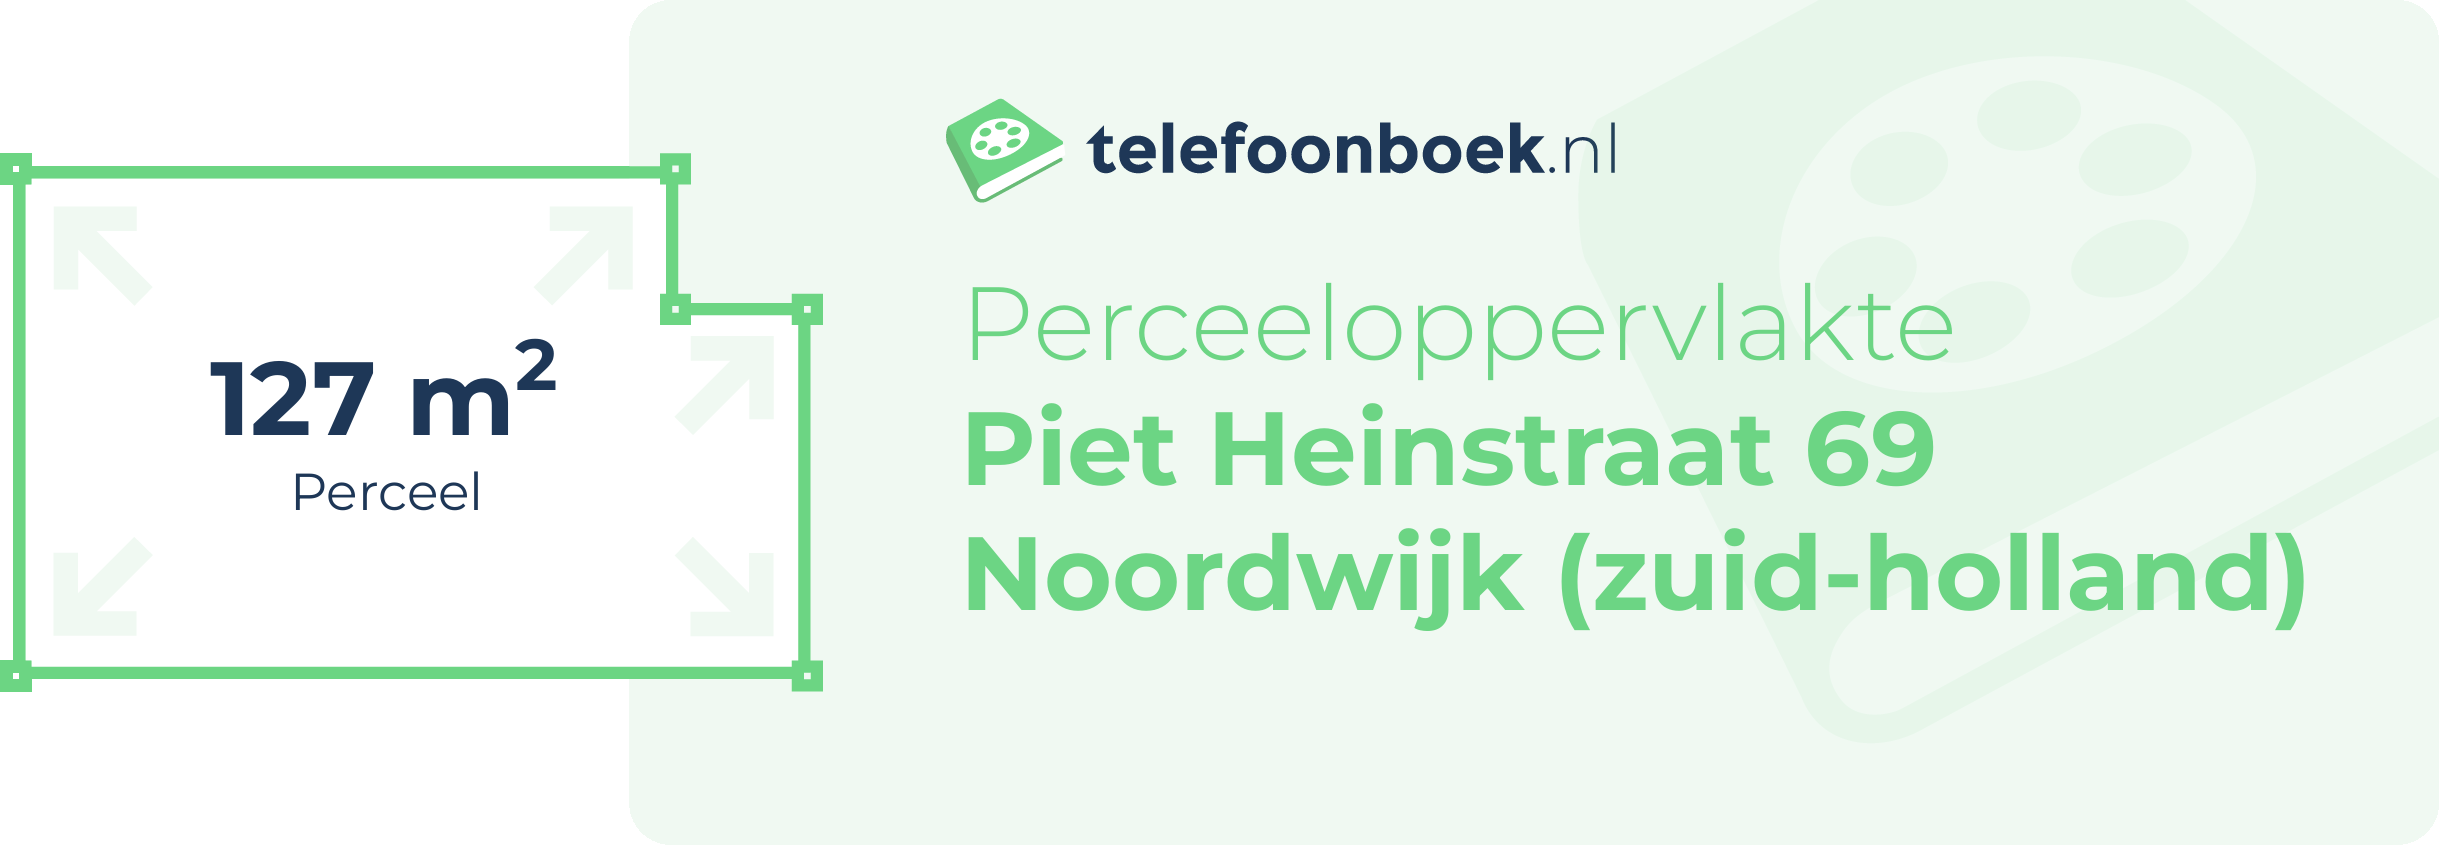 Perceeloppervlakte Piet Heinstraat 69 Noordwijk (Zuid-Holland)